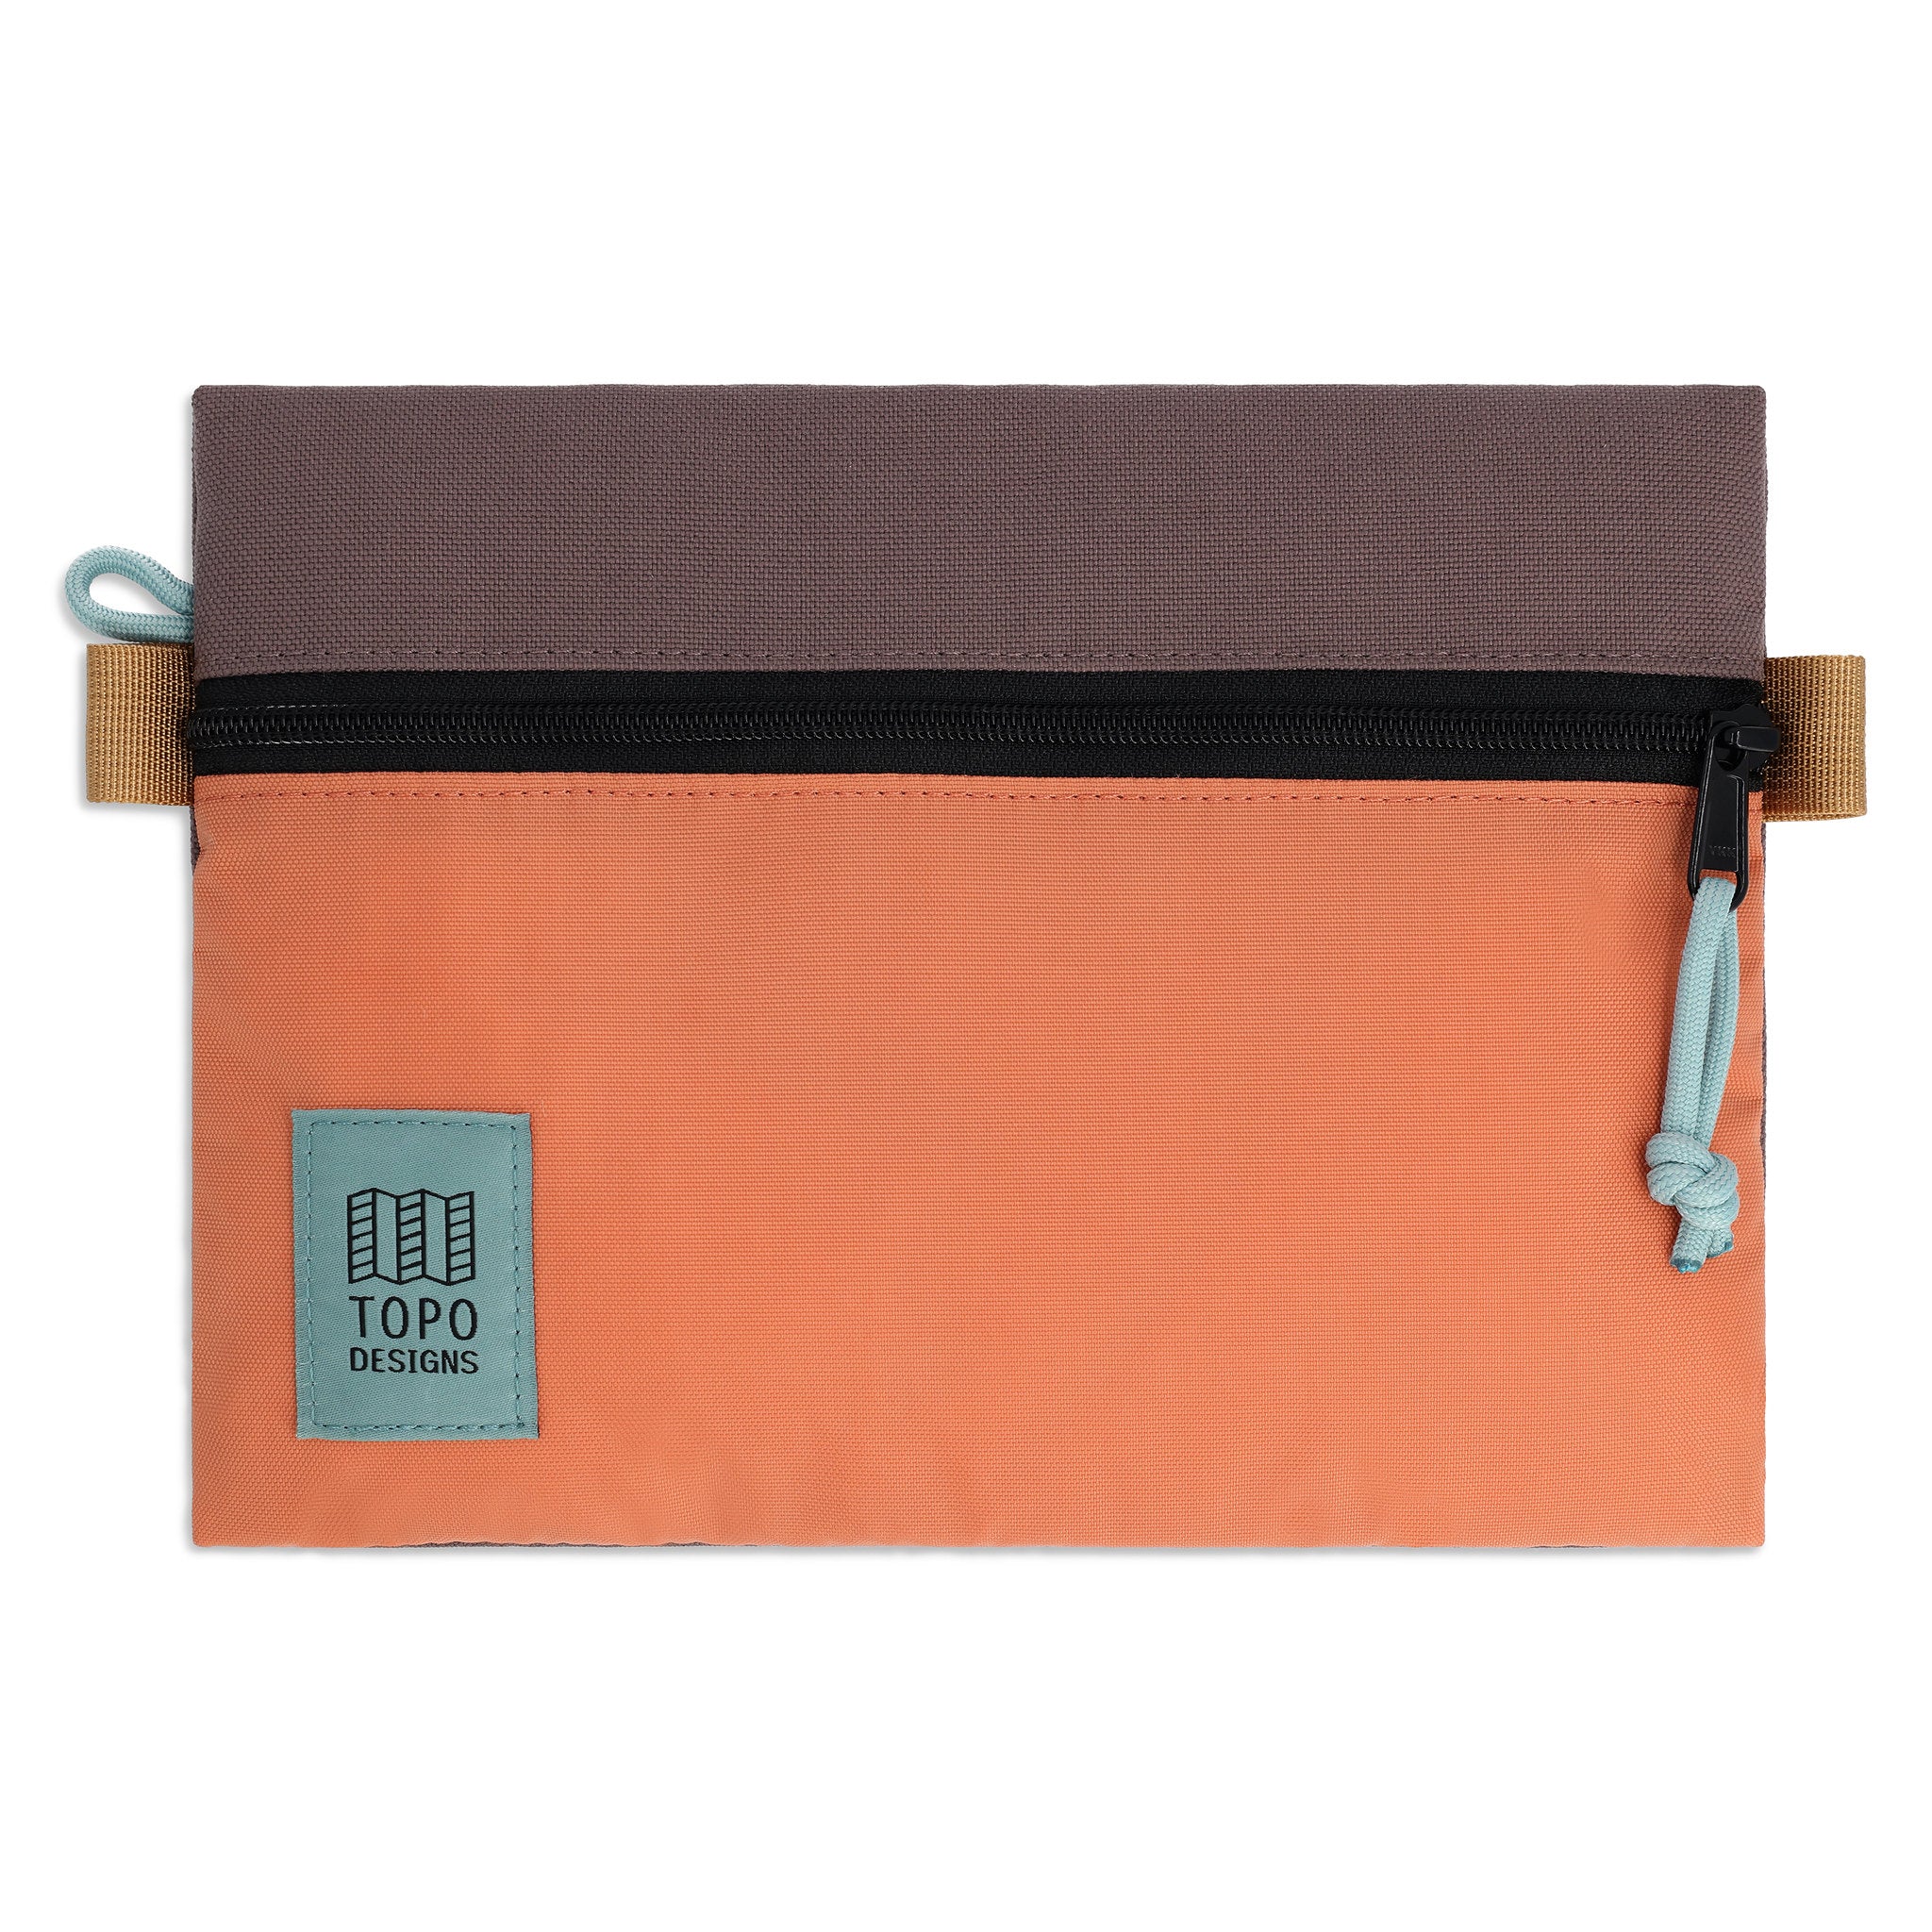 Accessory Bag Medium | Topo-Designs 